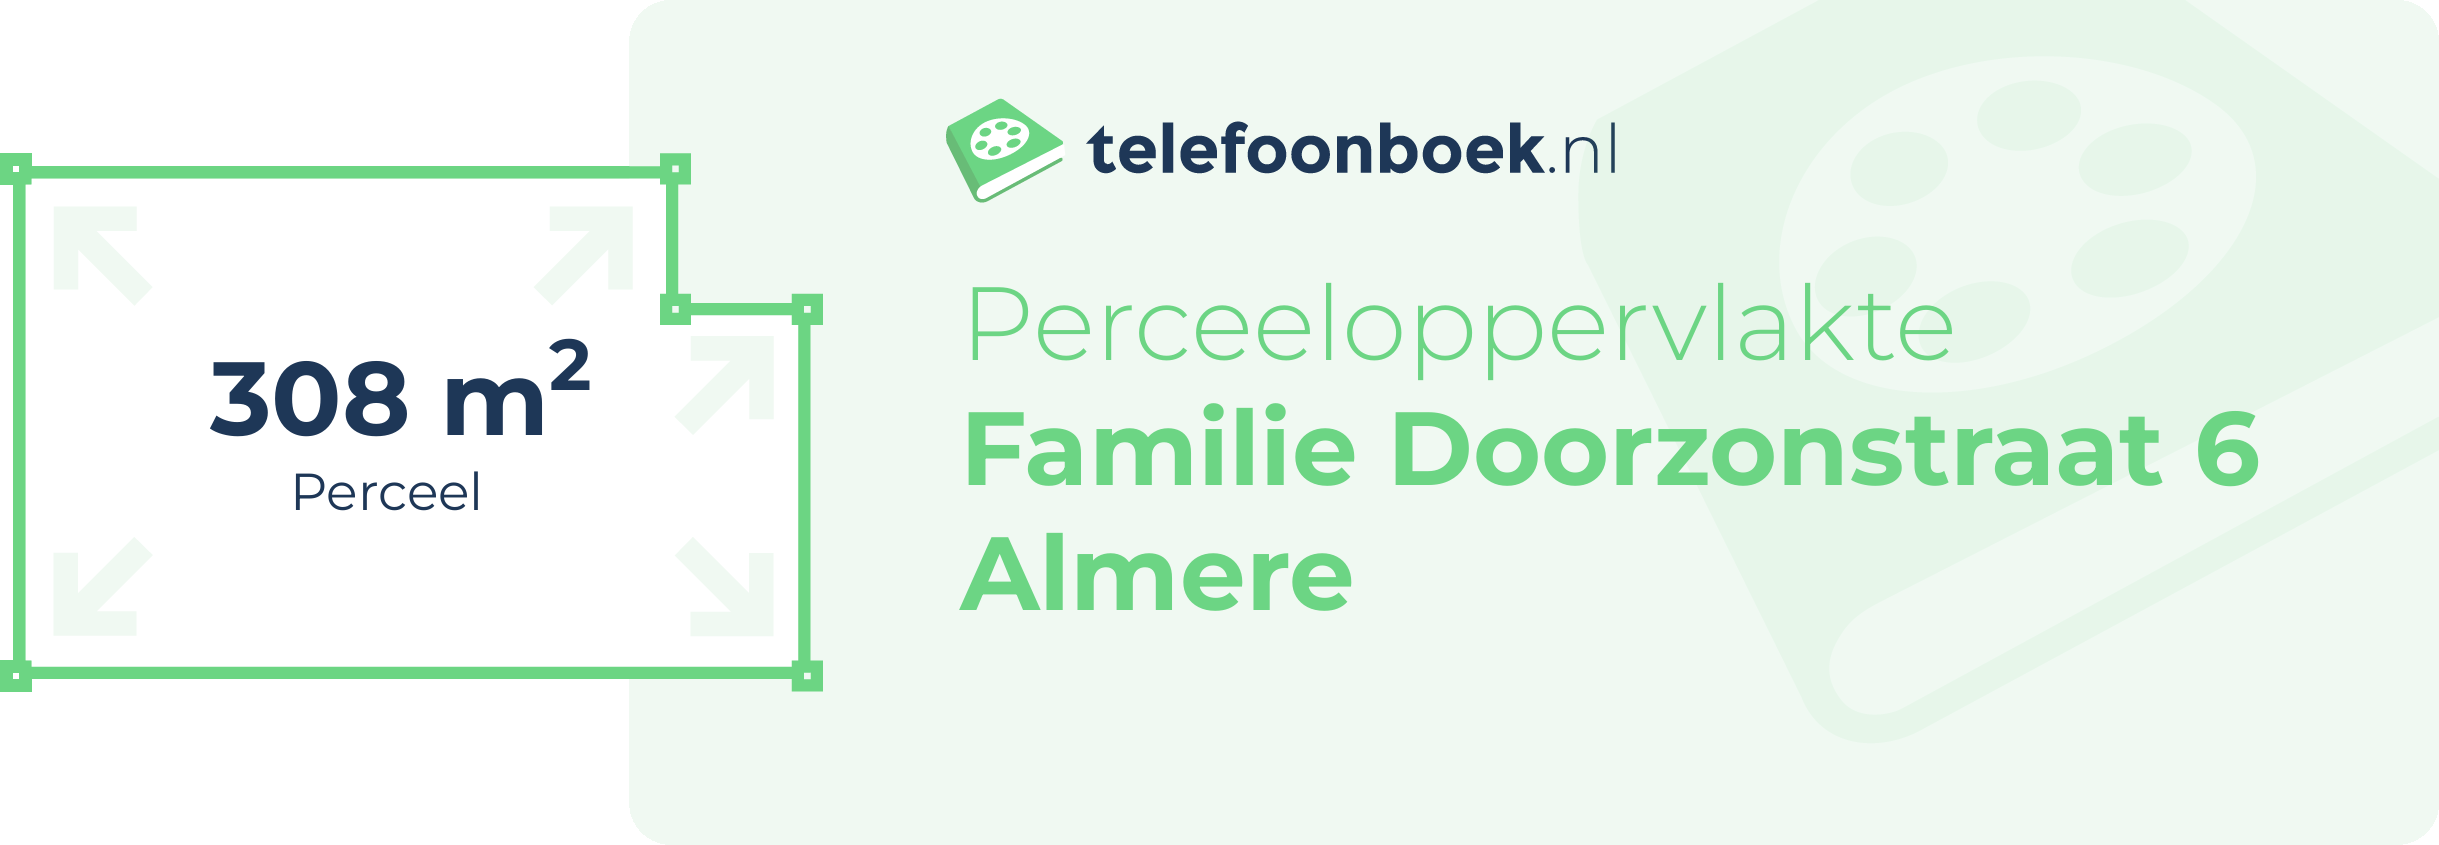 Perceeloppervlakte Familie Doorzonstraat 6 Almere